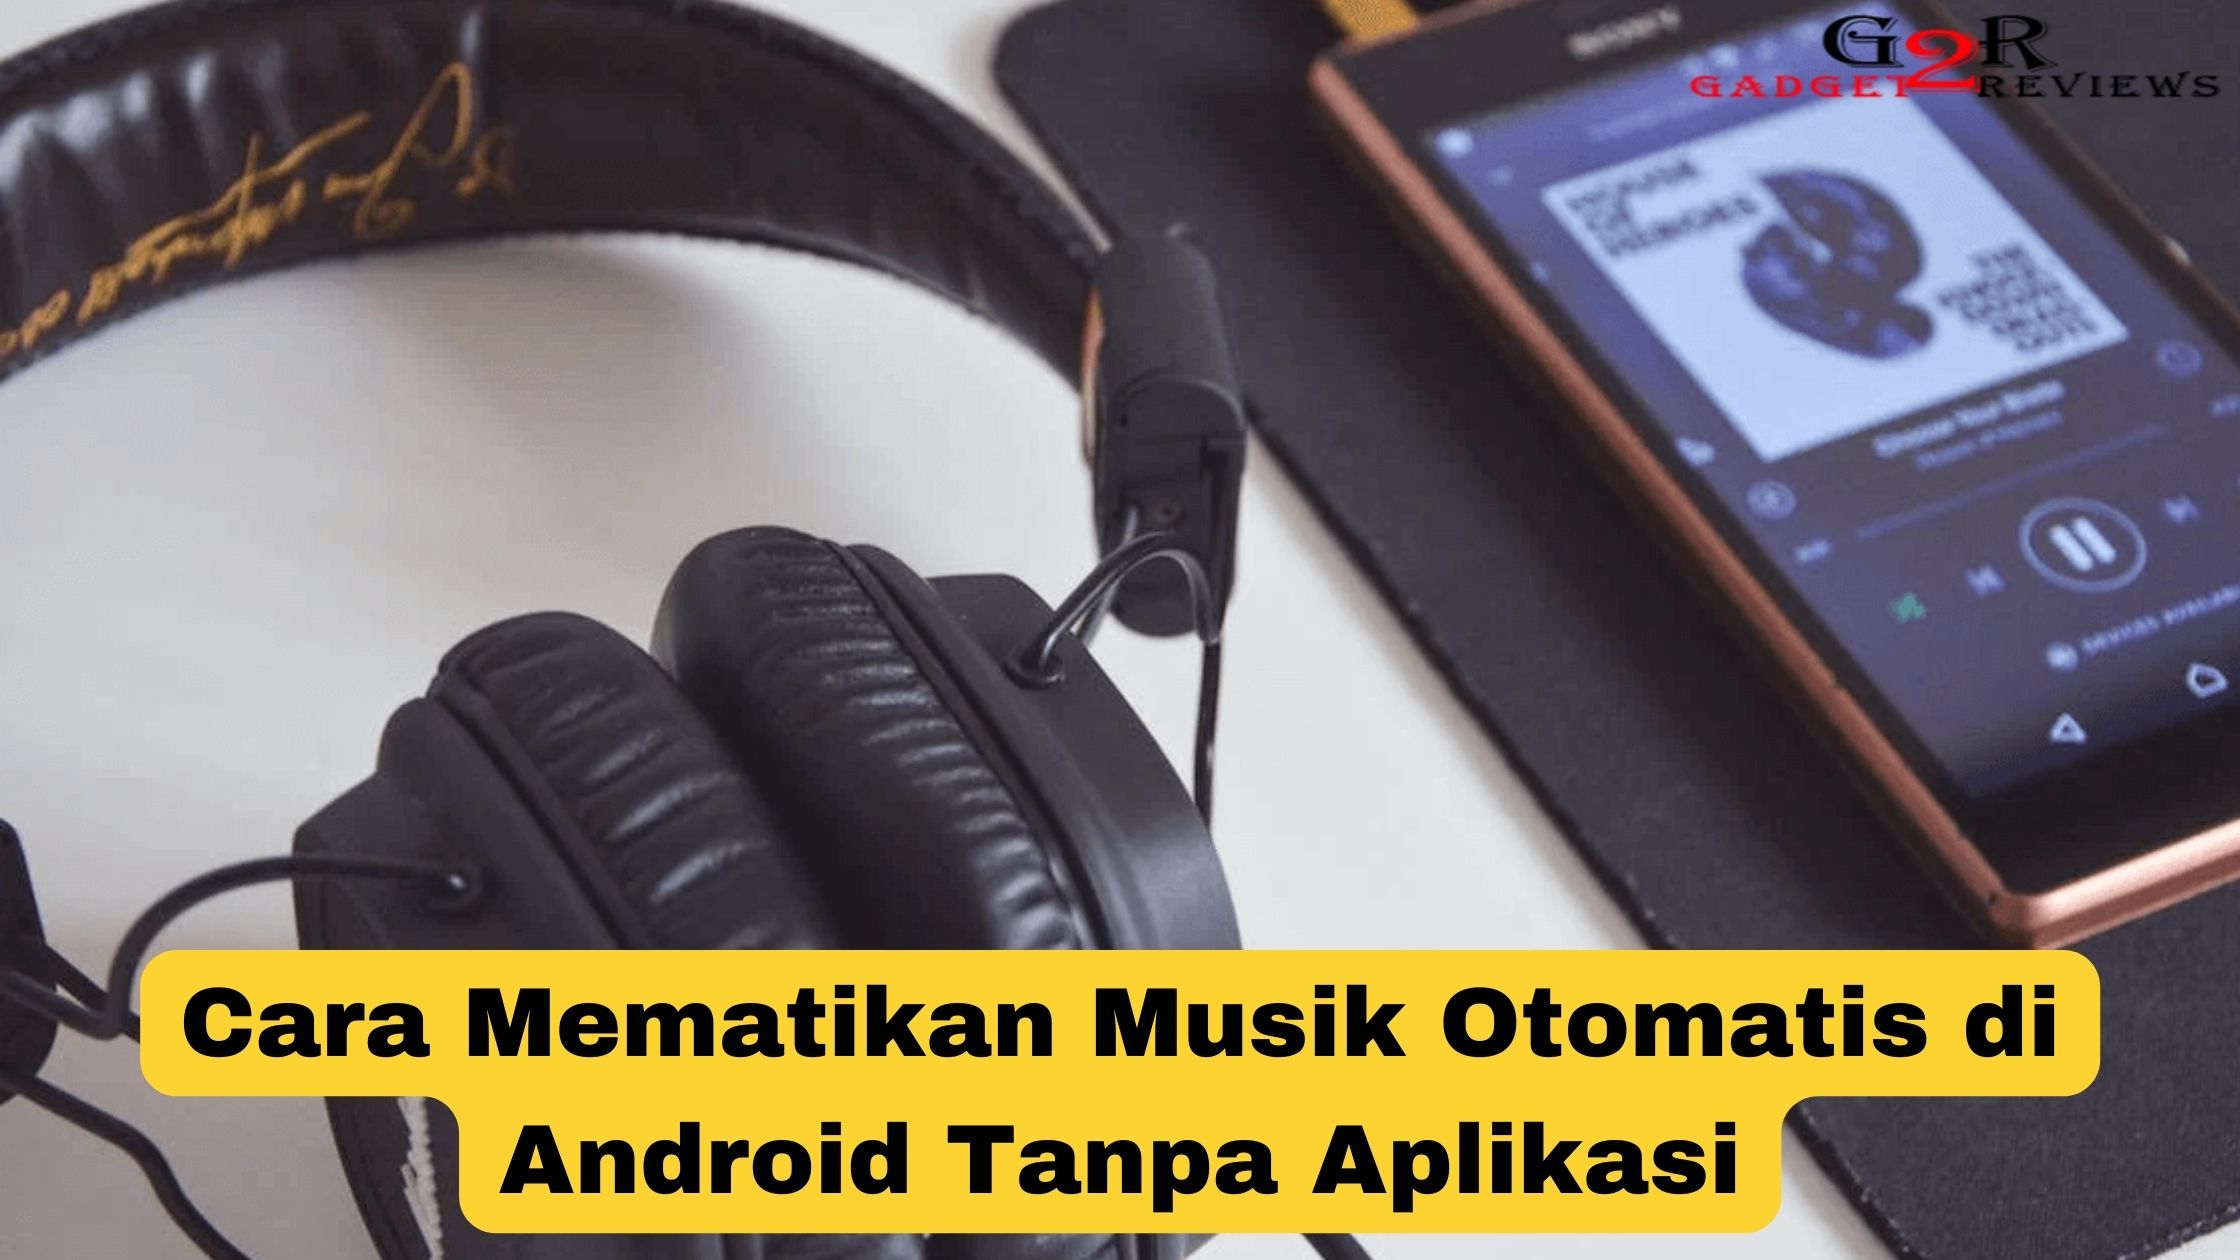 Cara Mematikan Musik Otomatis di Android Tanpa Aplikasi